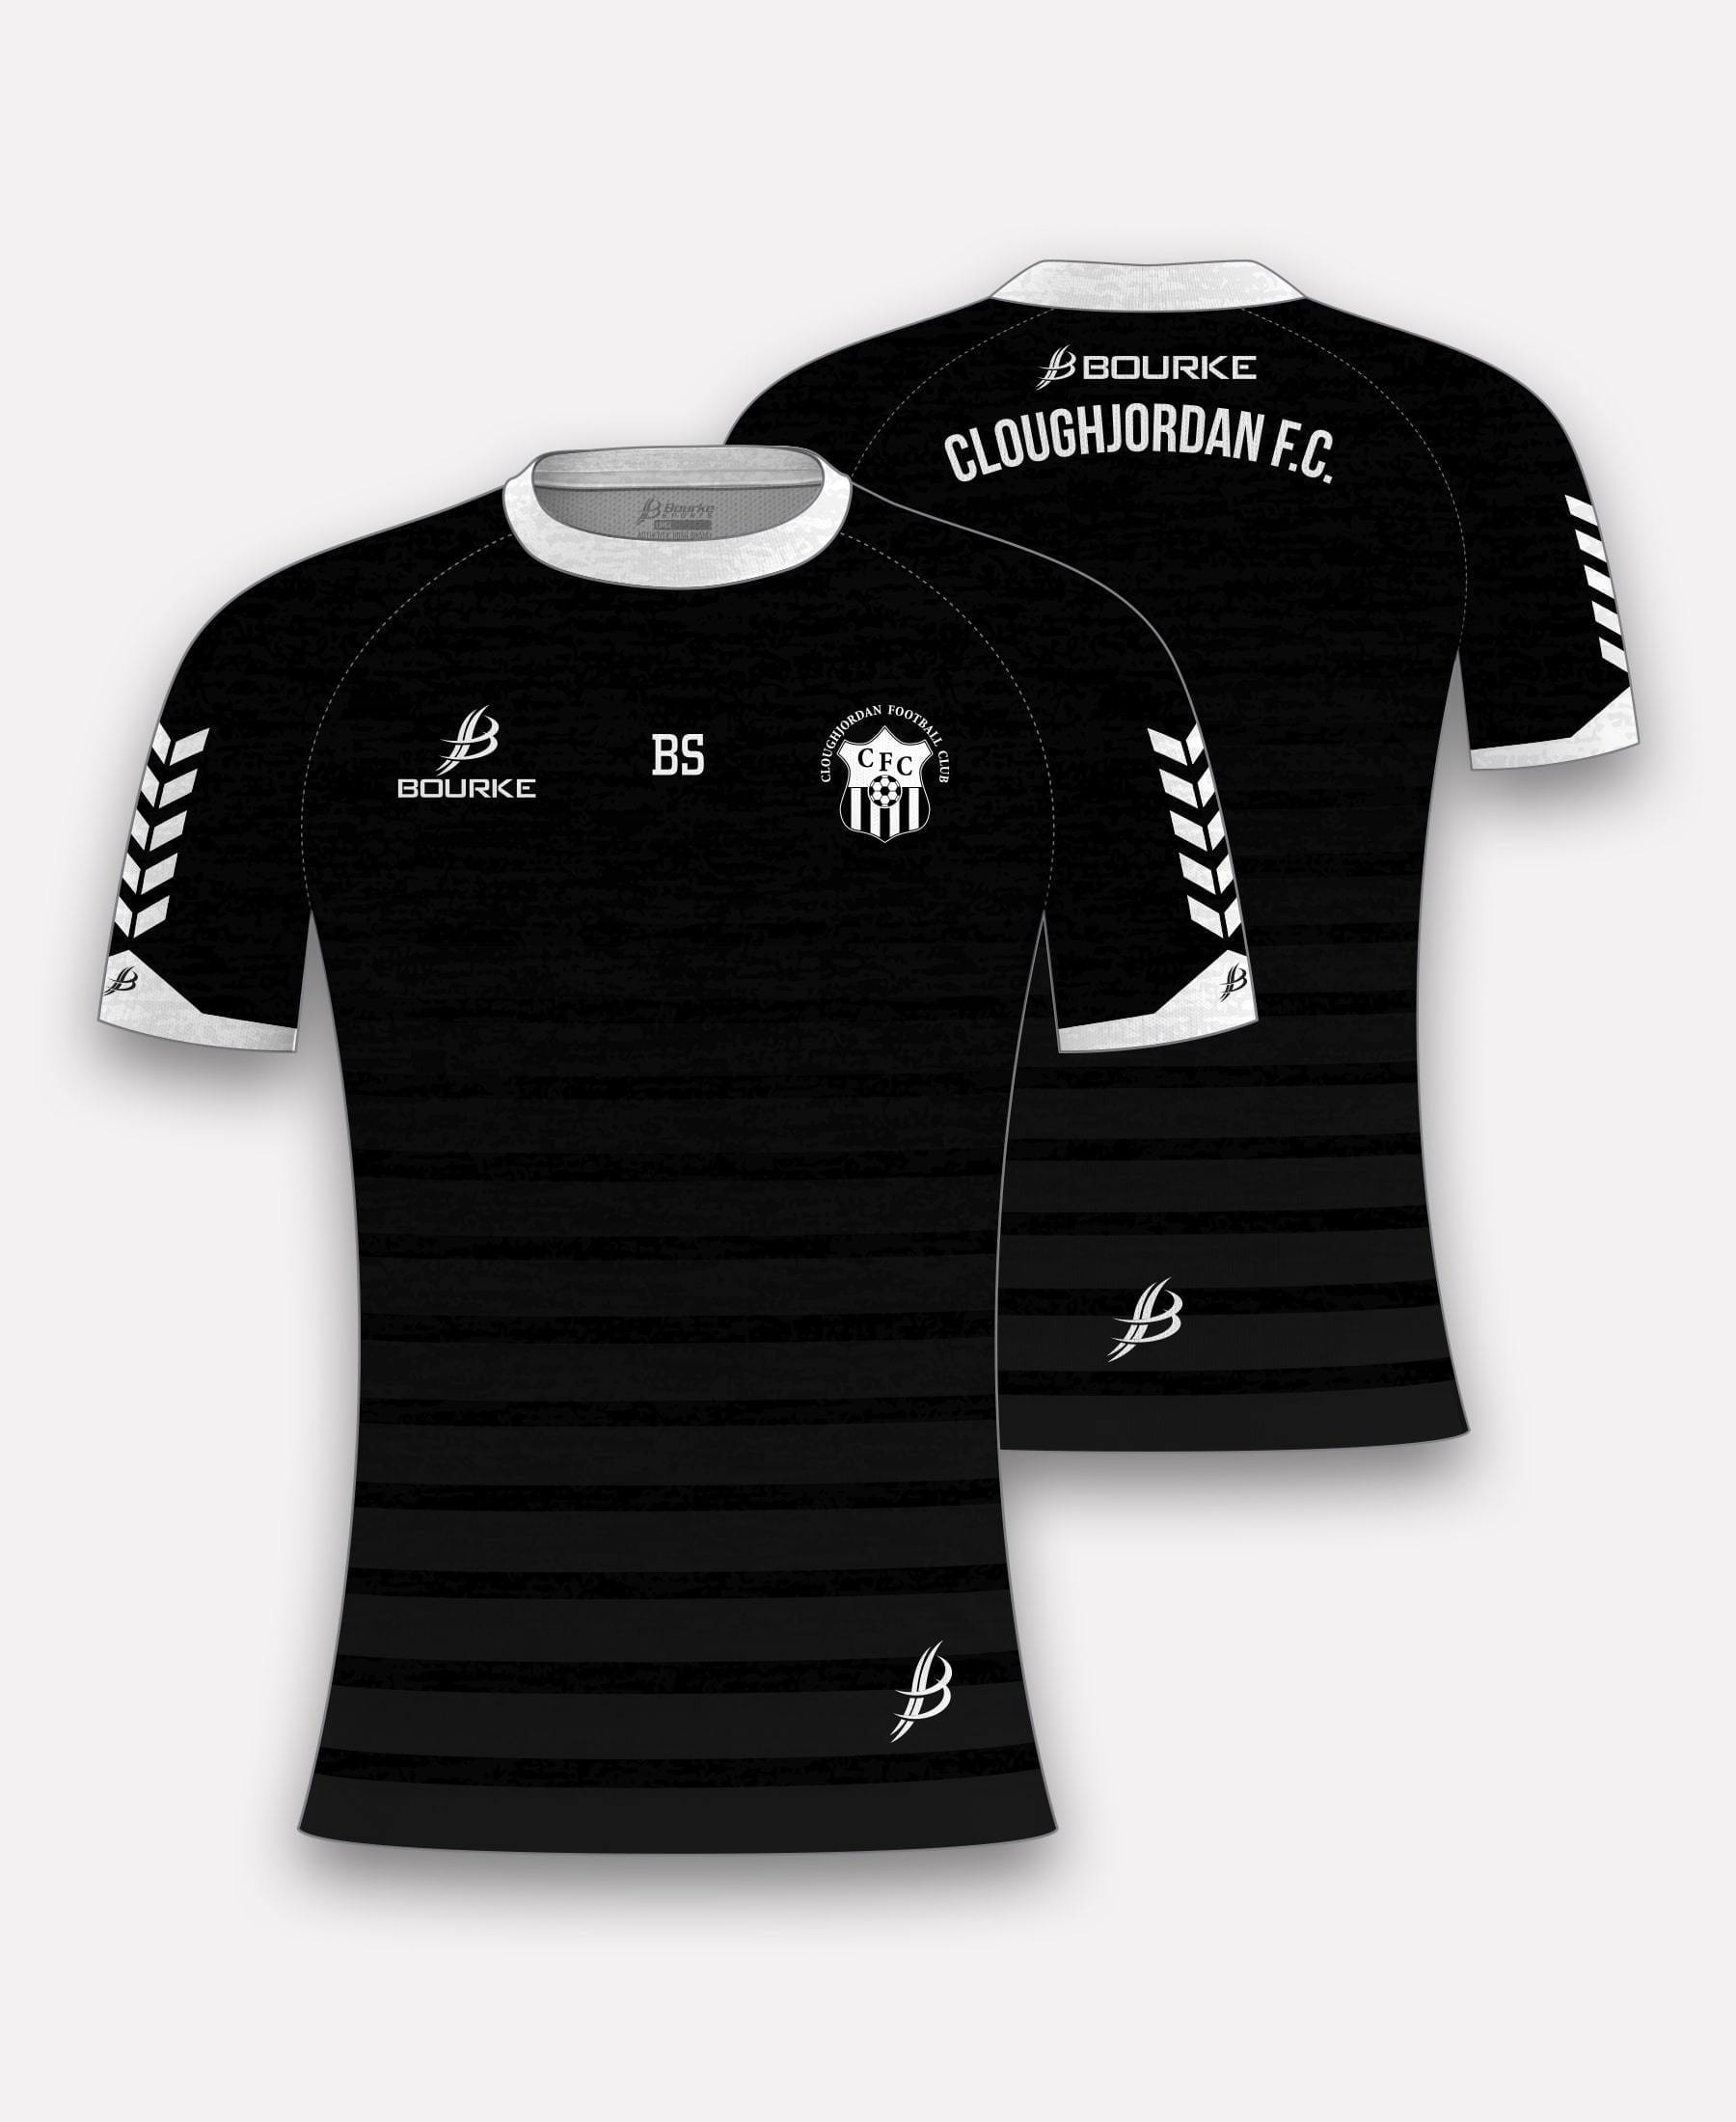 Cloughjordan Soccer Jersey - Bourke Sports Limited